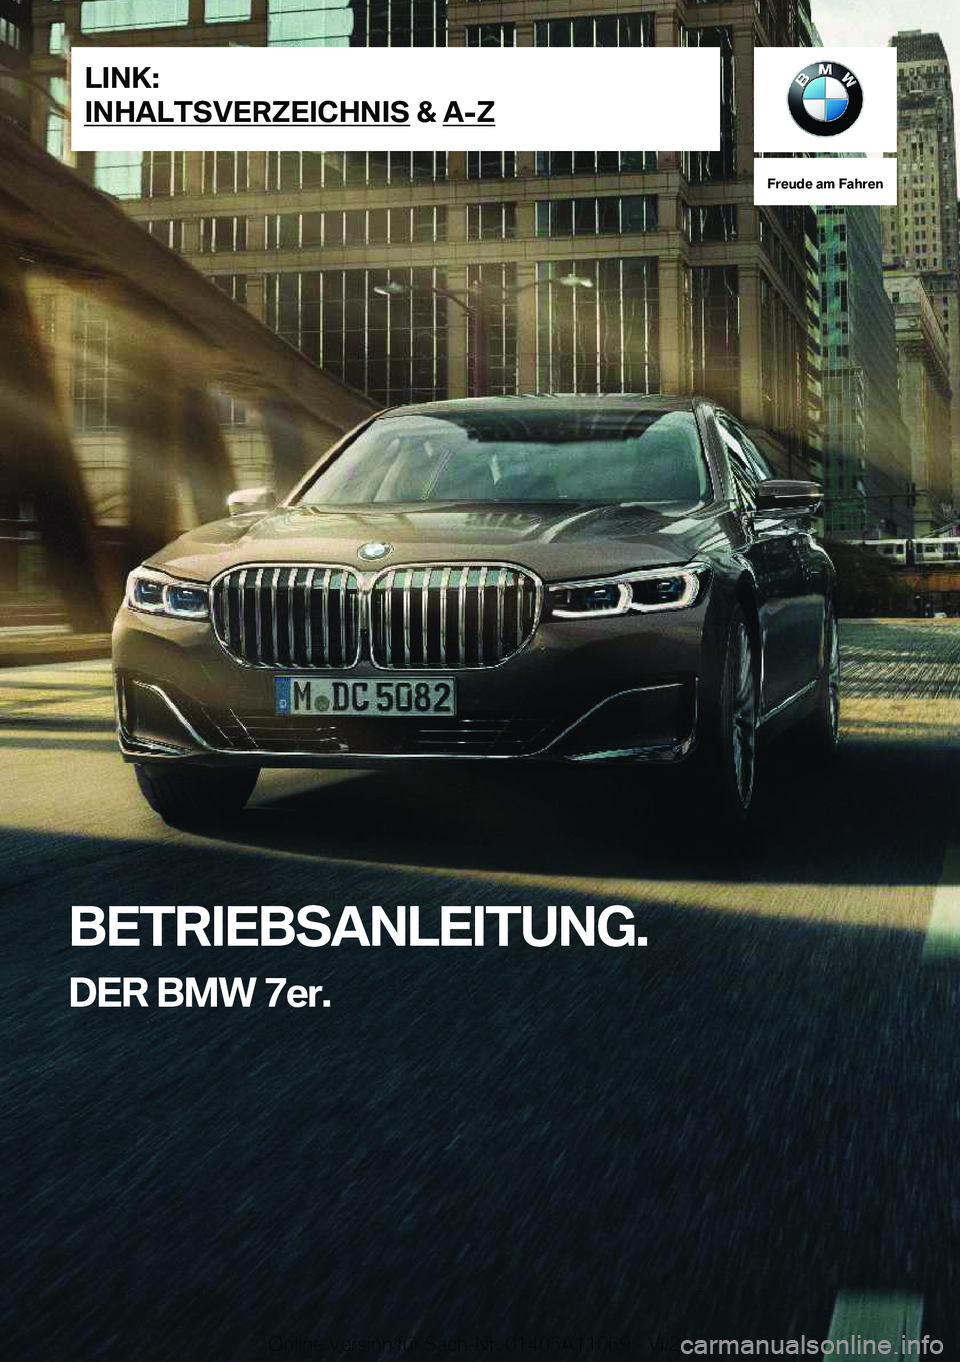 BMW 7 SERIES 2021  Betriebsanleitungen (in German) �F�r�e�u�d�e��a�m��F�a�h�r�e�n
�B�E�T�R�I�E�B�S�A�N�L�E�I�T�U�N�G�.�D�E�R��B�M�W��7�e�r�.�L�I�N�K�:
�I�N�H�A�L�T�S�V�E�R�Z�E�I�C�H�N�I�S��&��A�-�Z�O�n�l�i�n�e��V�e�r�s�i�o�n��f�